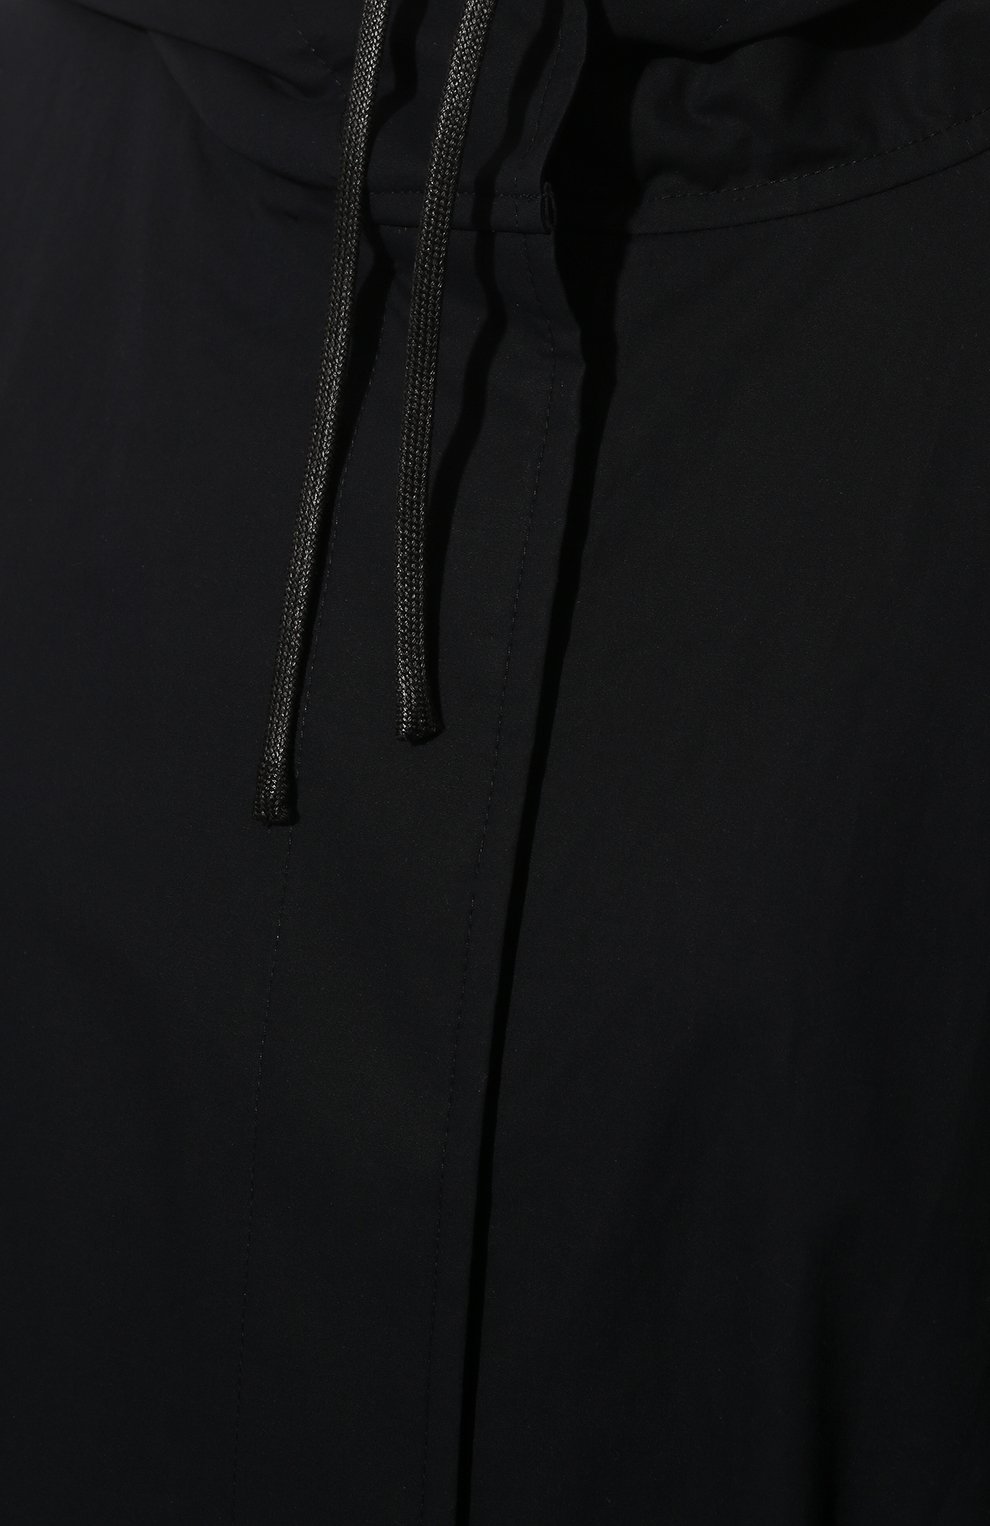 Женский хлопковый дождевик JIL SANDER темно-синего цвета, арт. JSEU430005-WU245036 | Фото 5 (Рукава: Длинные; Длина (верхняя одежда): До колена; Материал внешний: Хлопок; Стили: Спорт-шик; Кросс-КТ: дождевики)